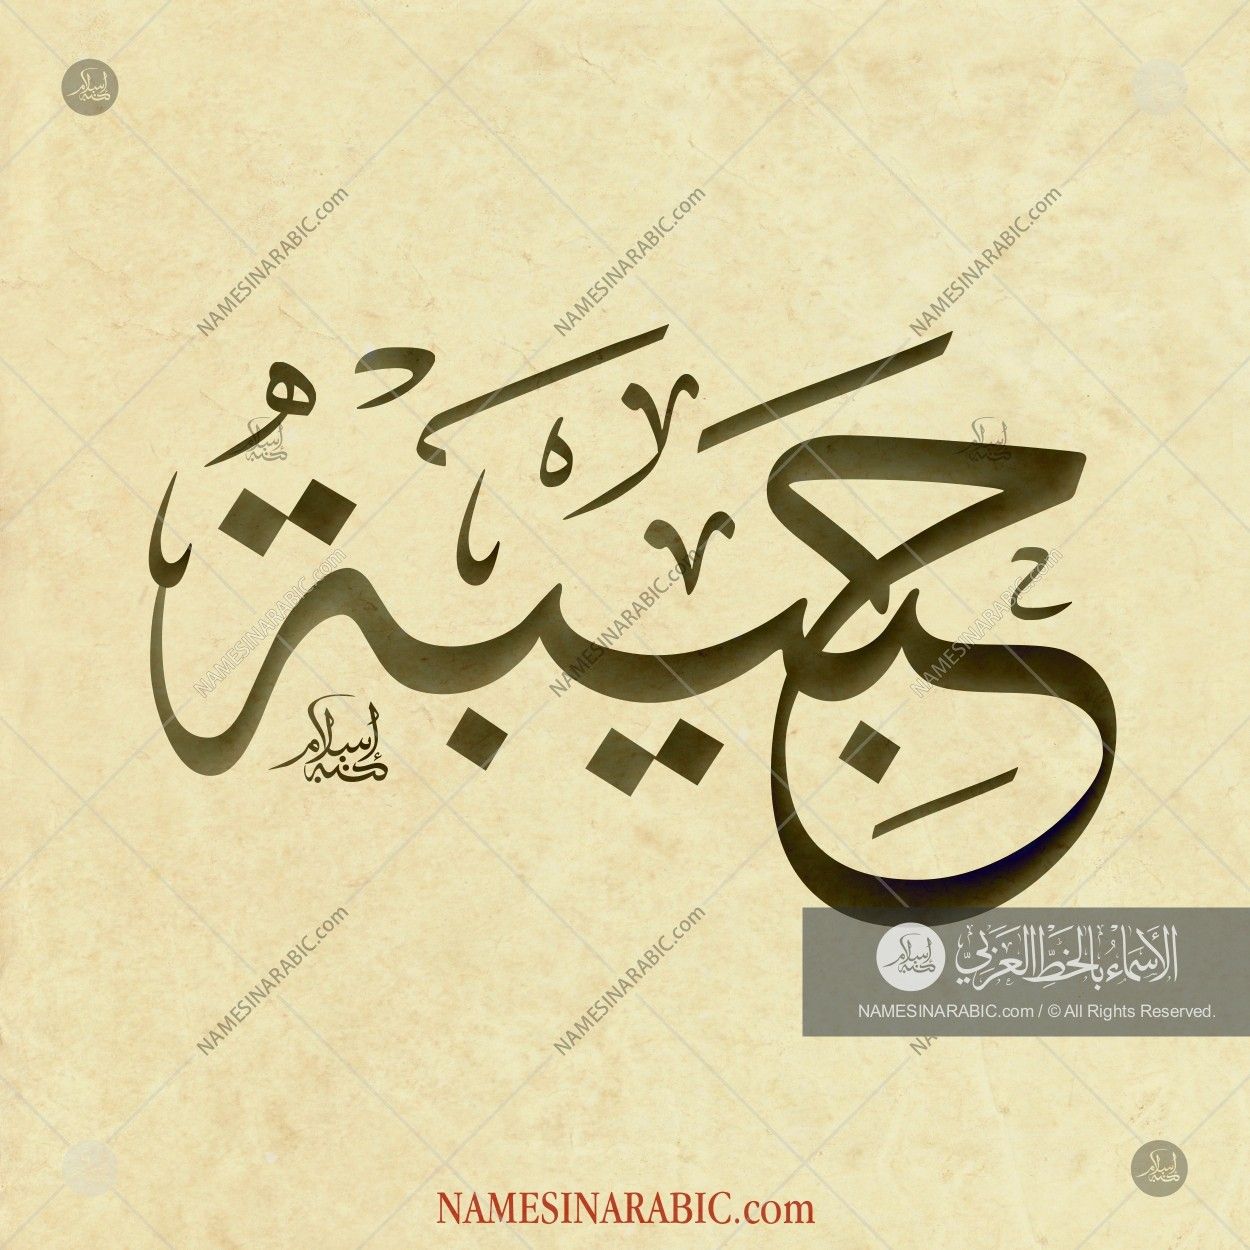 حبيبة / Names In Arabic Calligraphy - Habiba In Arabic Calligraphy , HD Wallpaper & Backgrounds